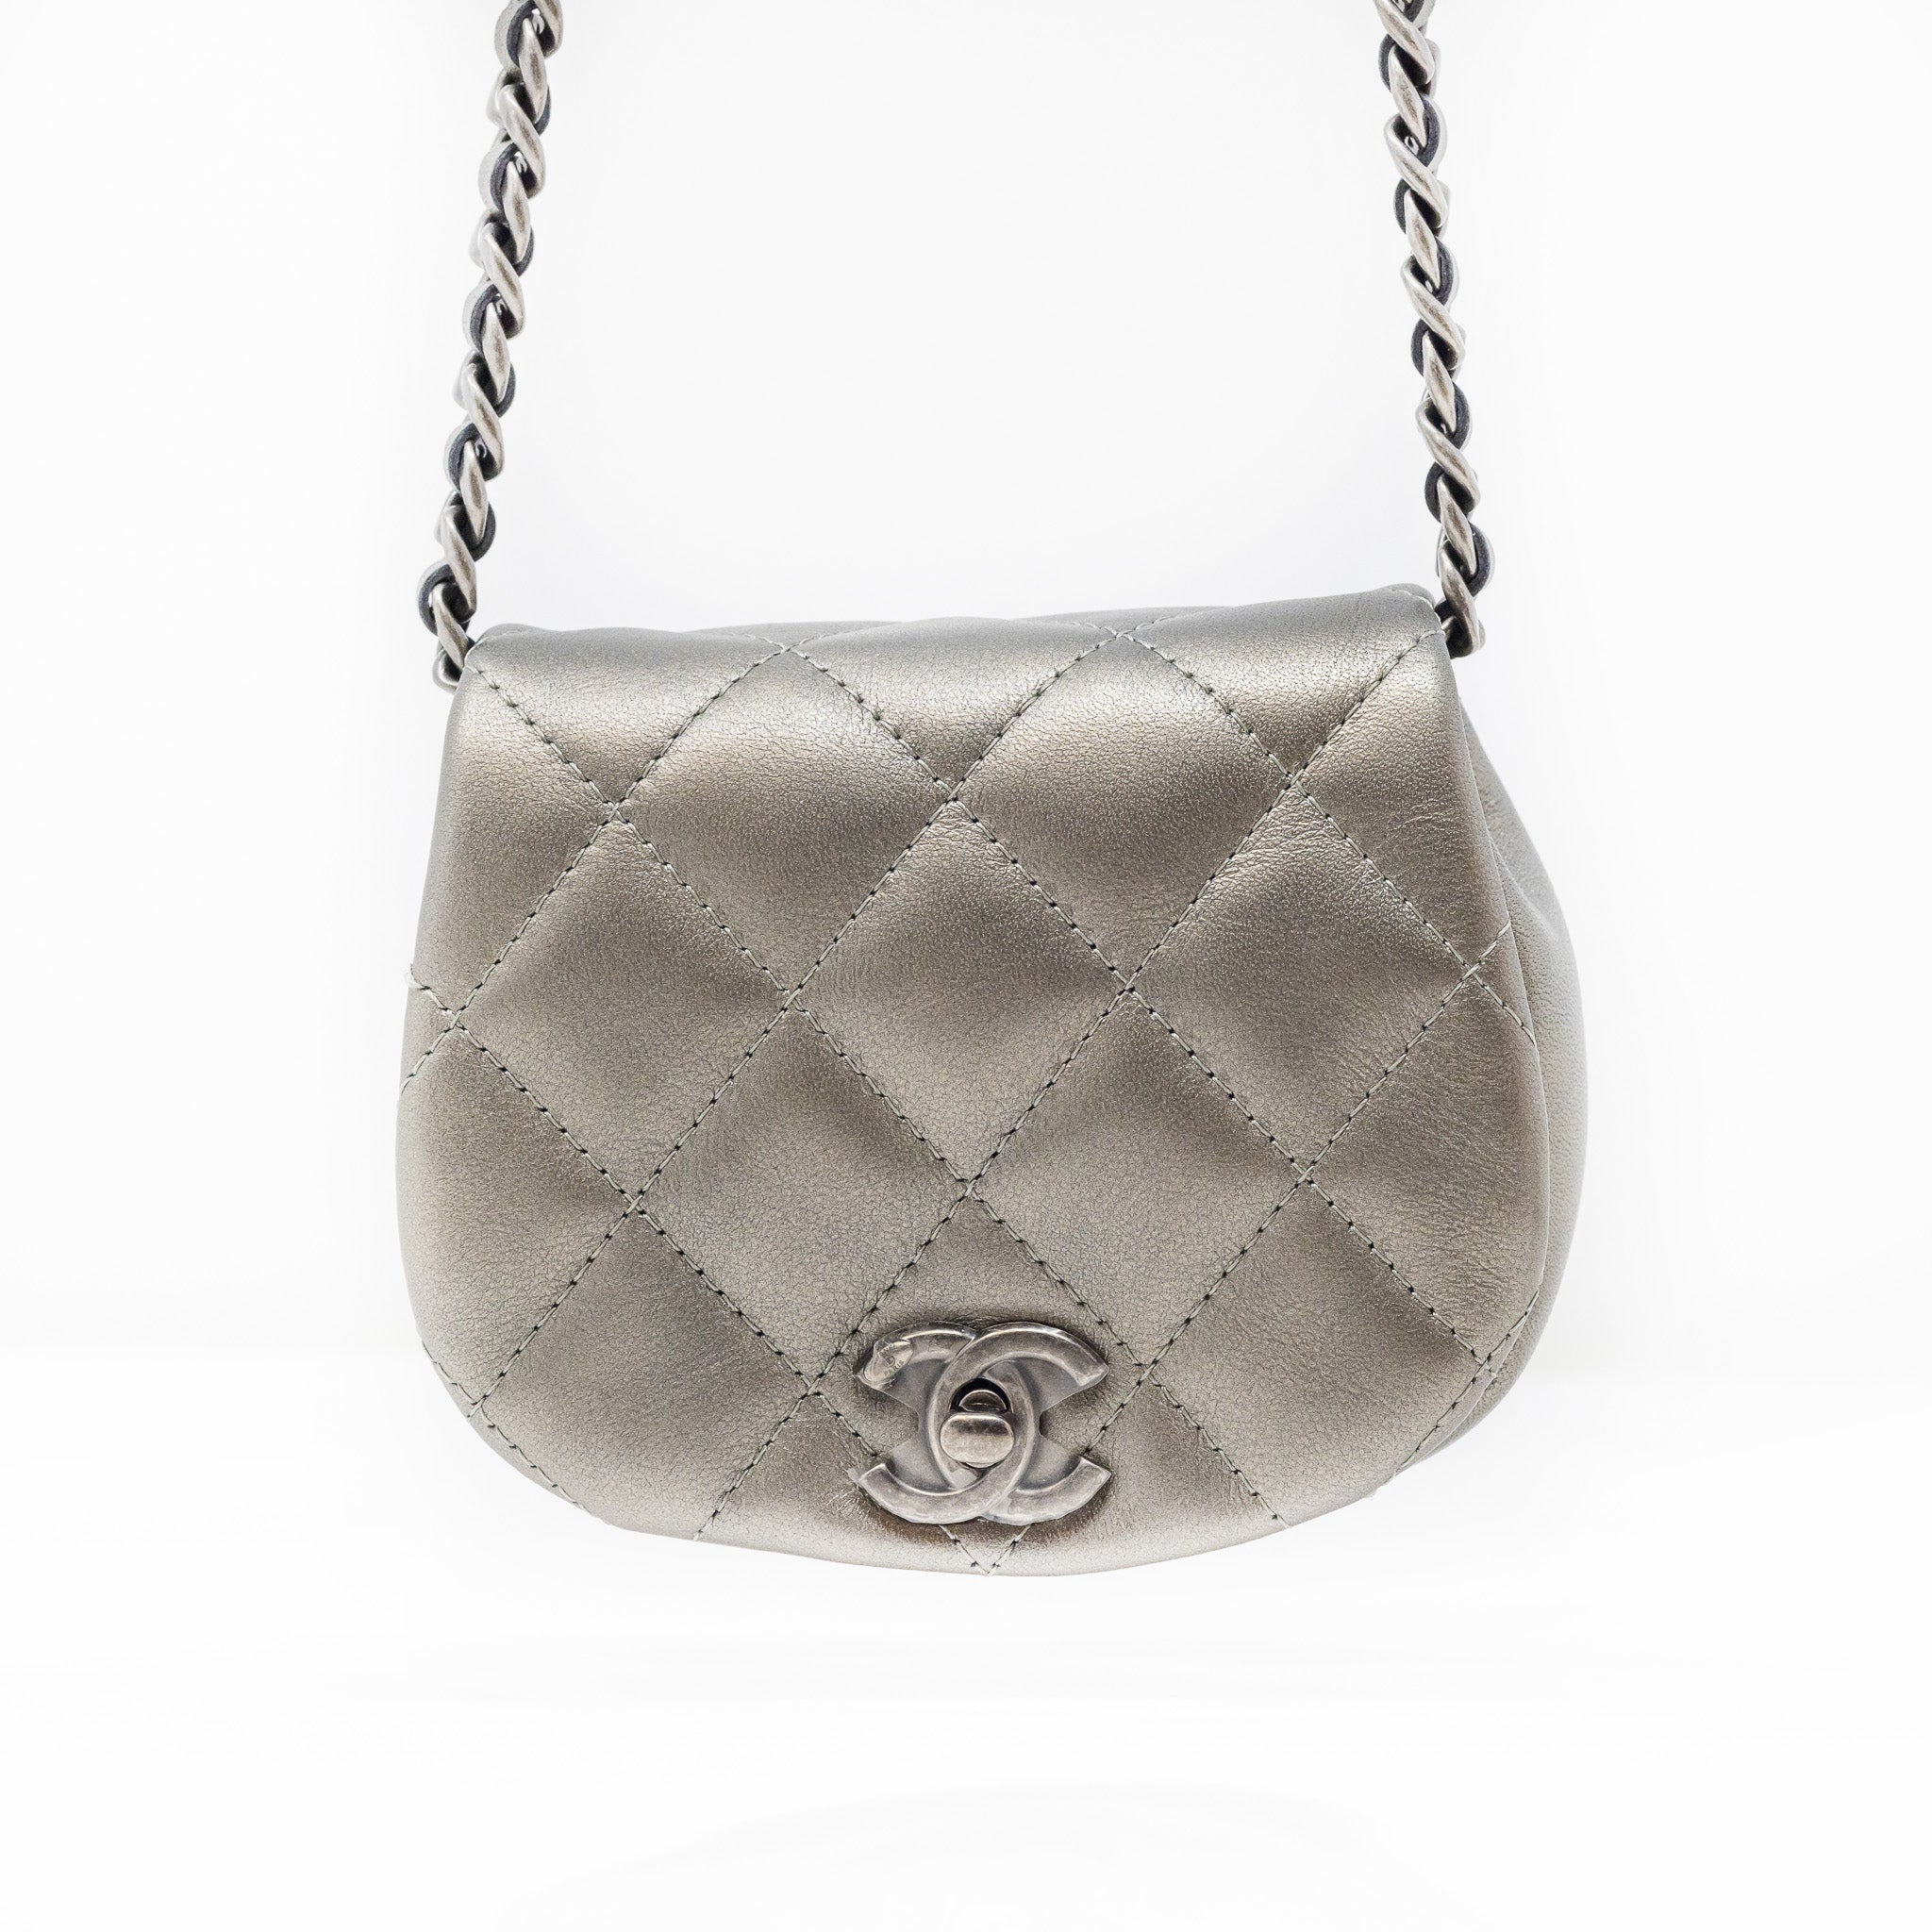 grey chanel purse